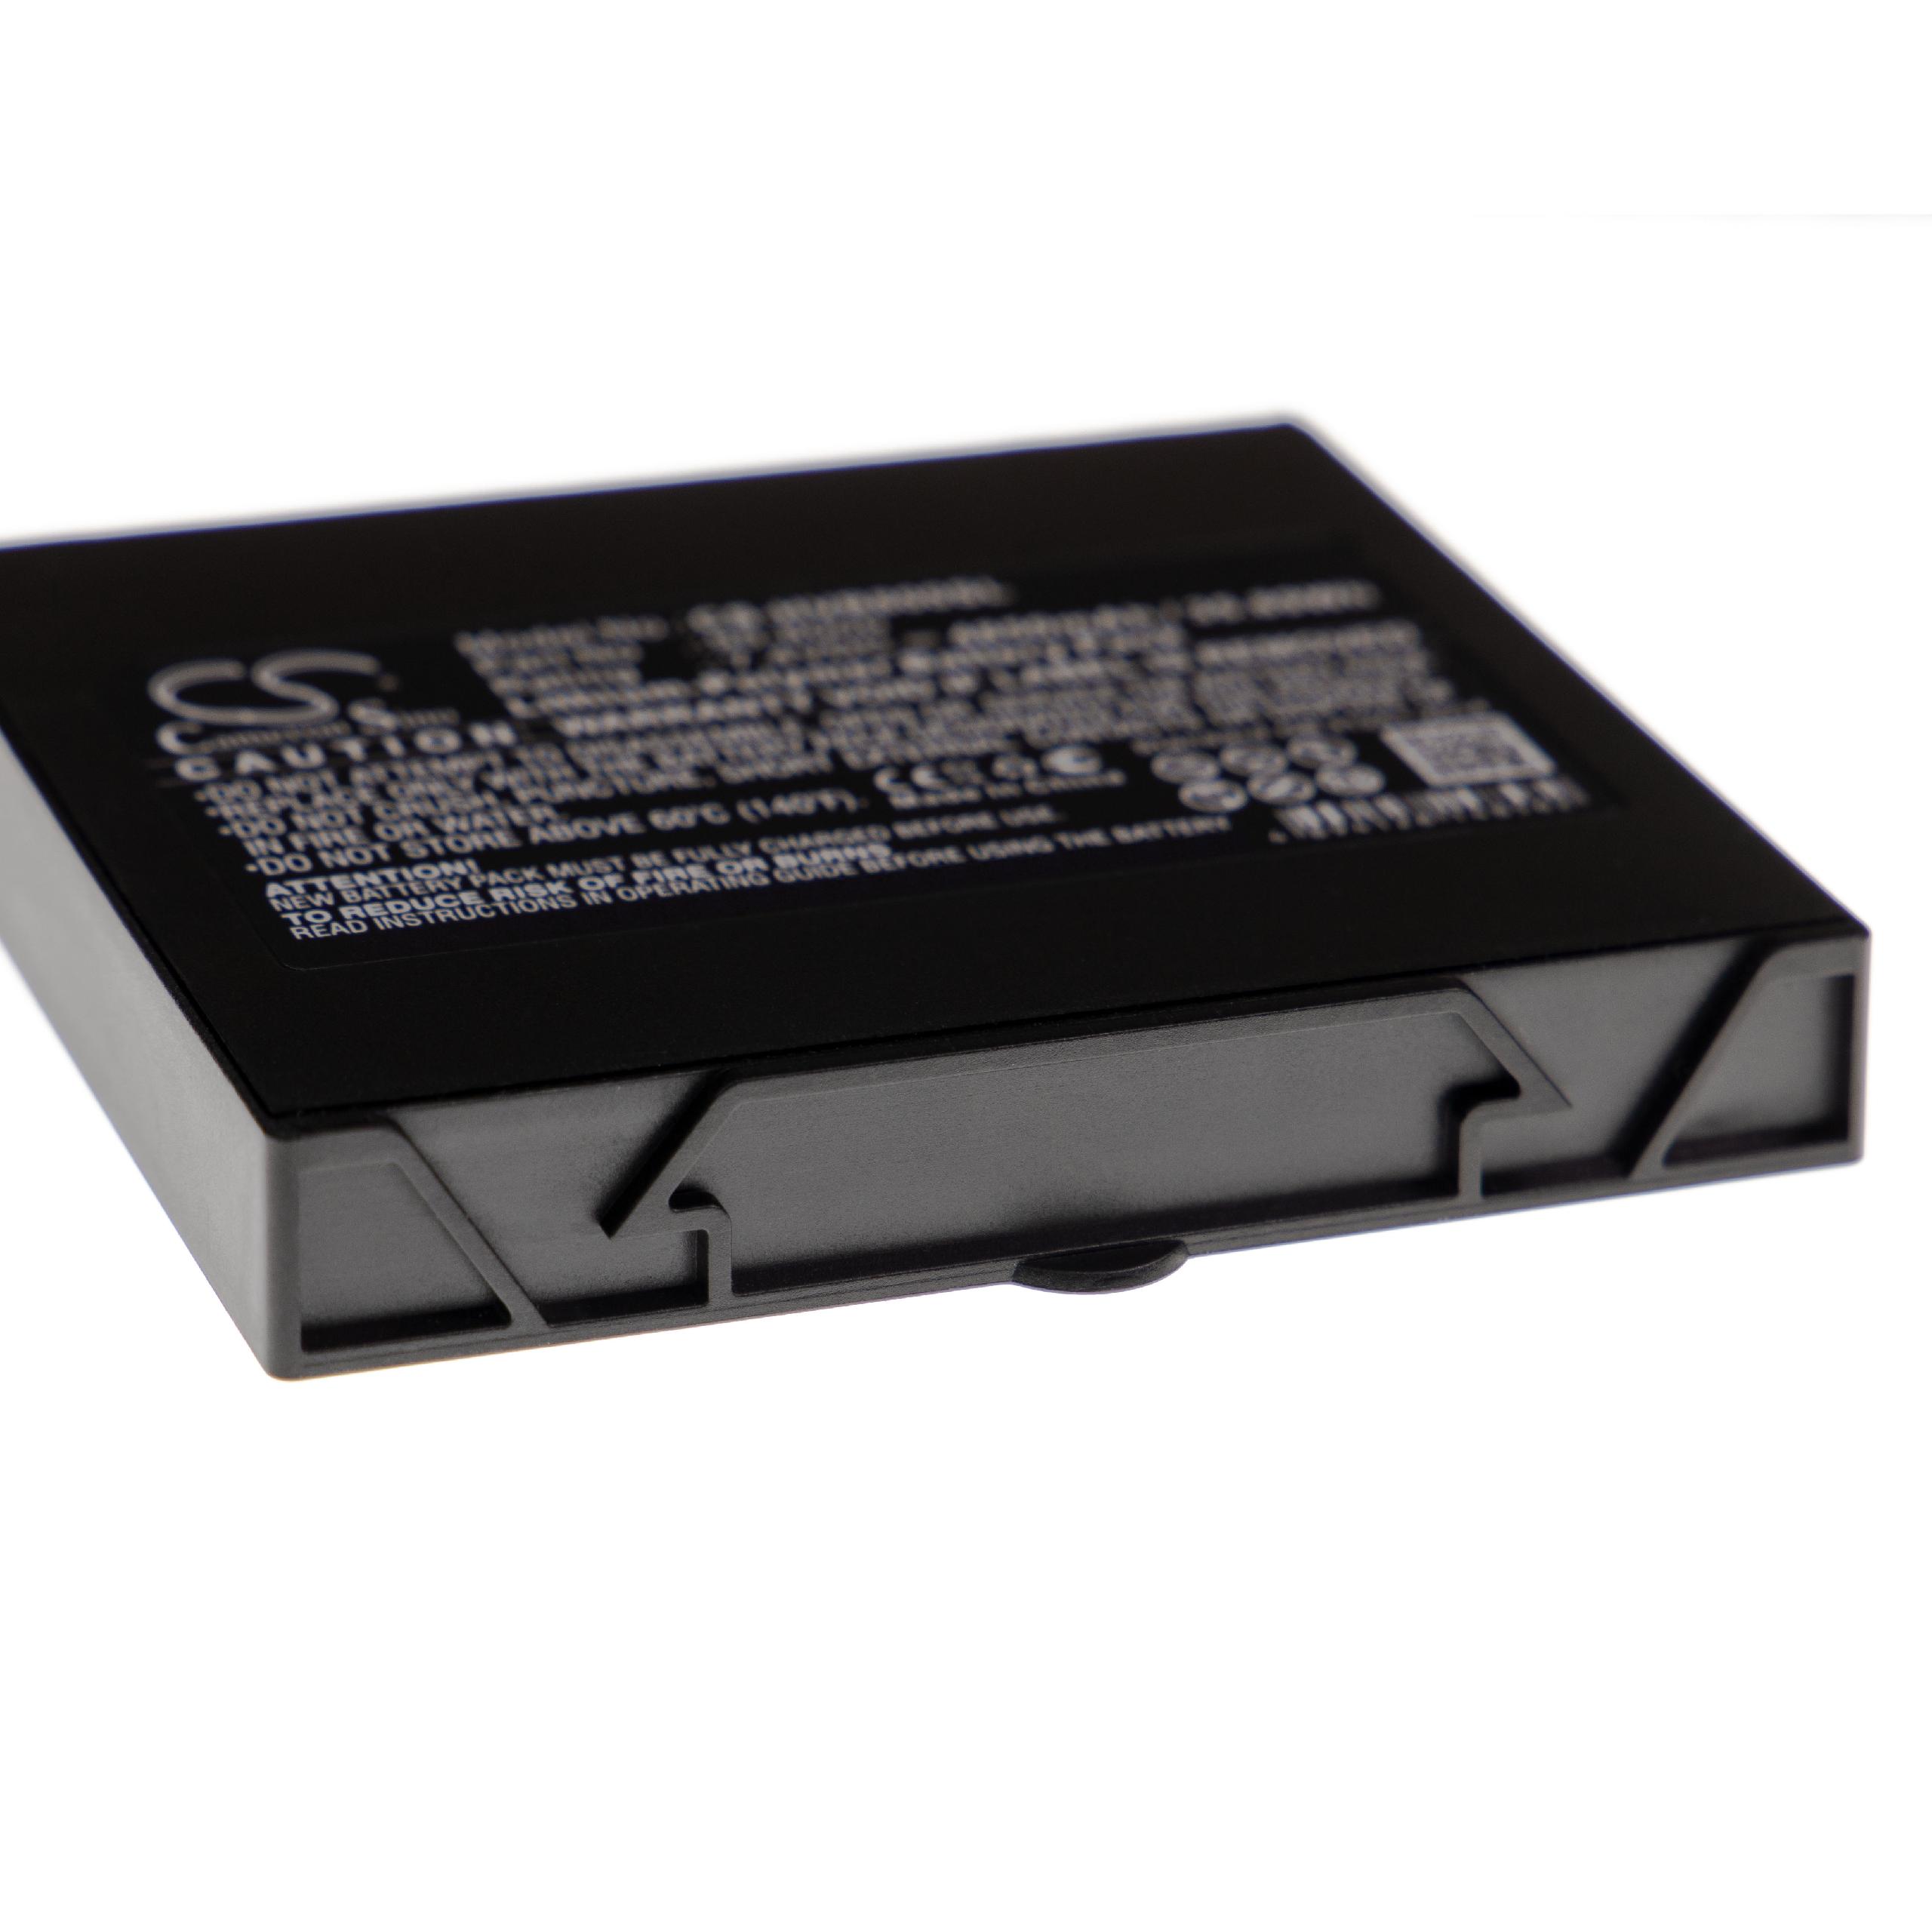  Battery replaces HumanWare 95-8000 for HumanWareLoudspeaker - Li-polymer 4850 mAh